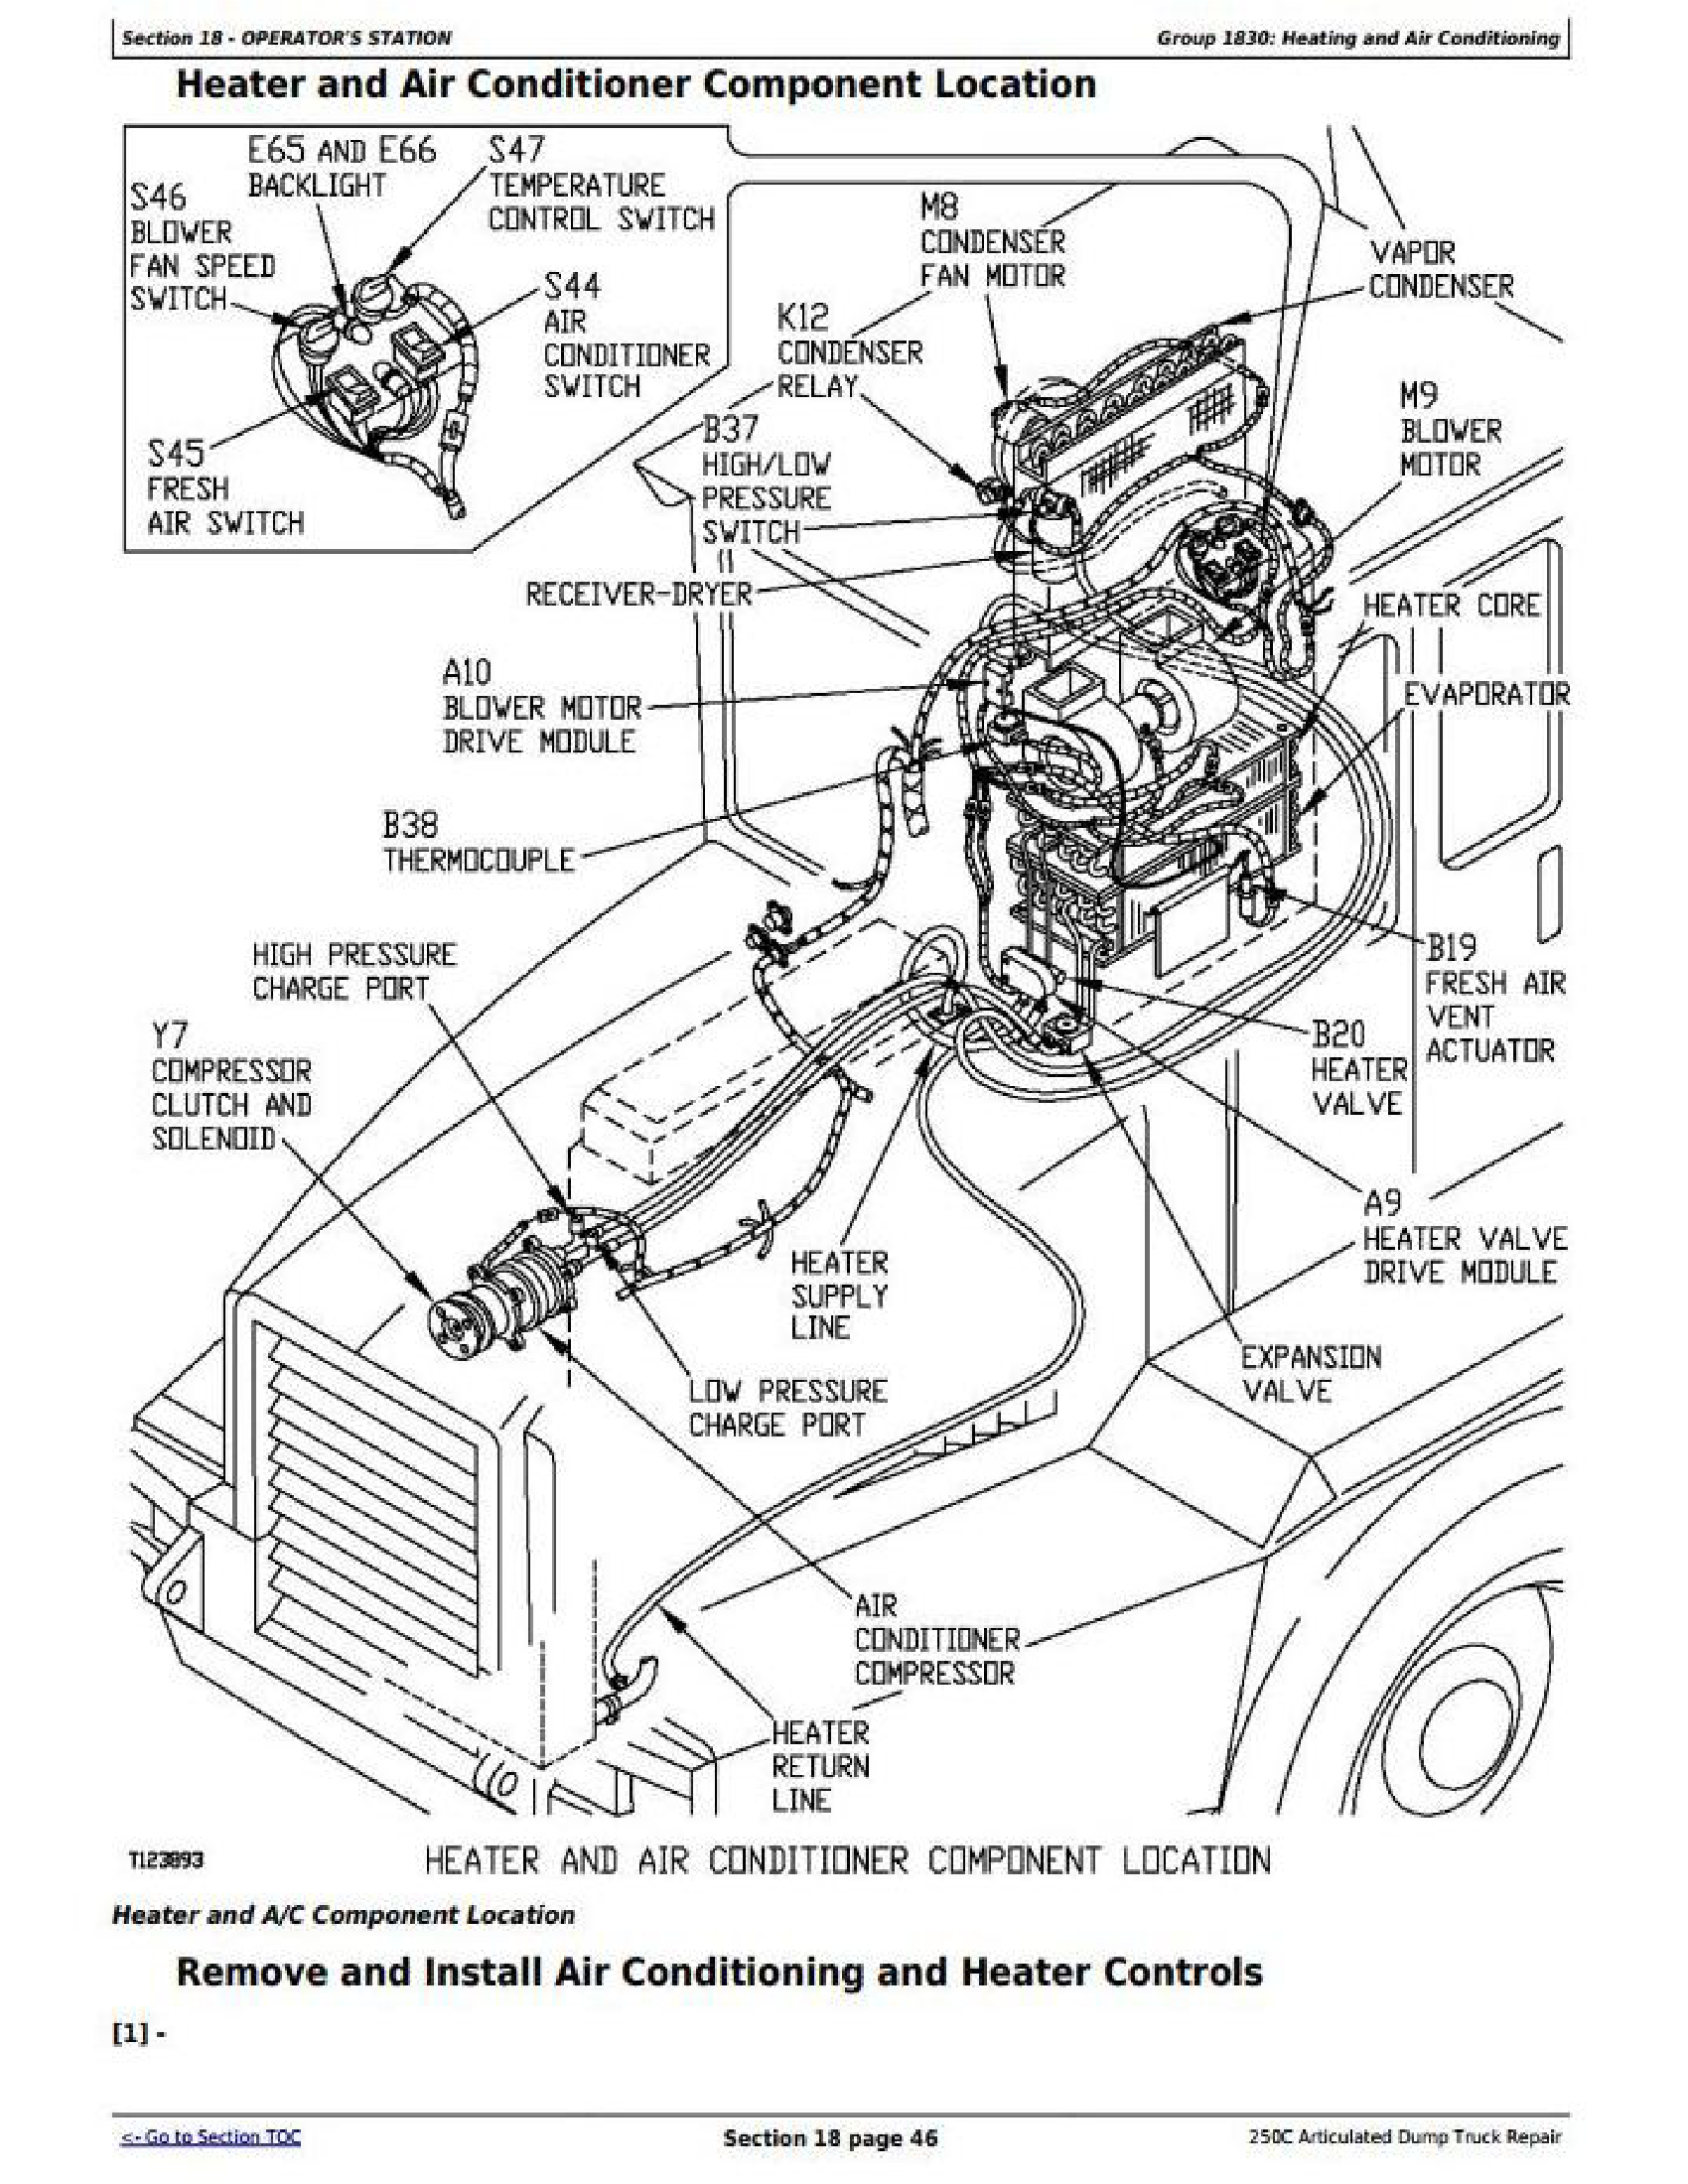 John Deere 250C manual pdf